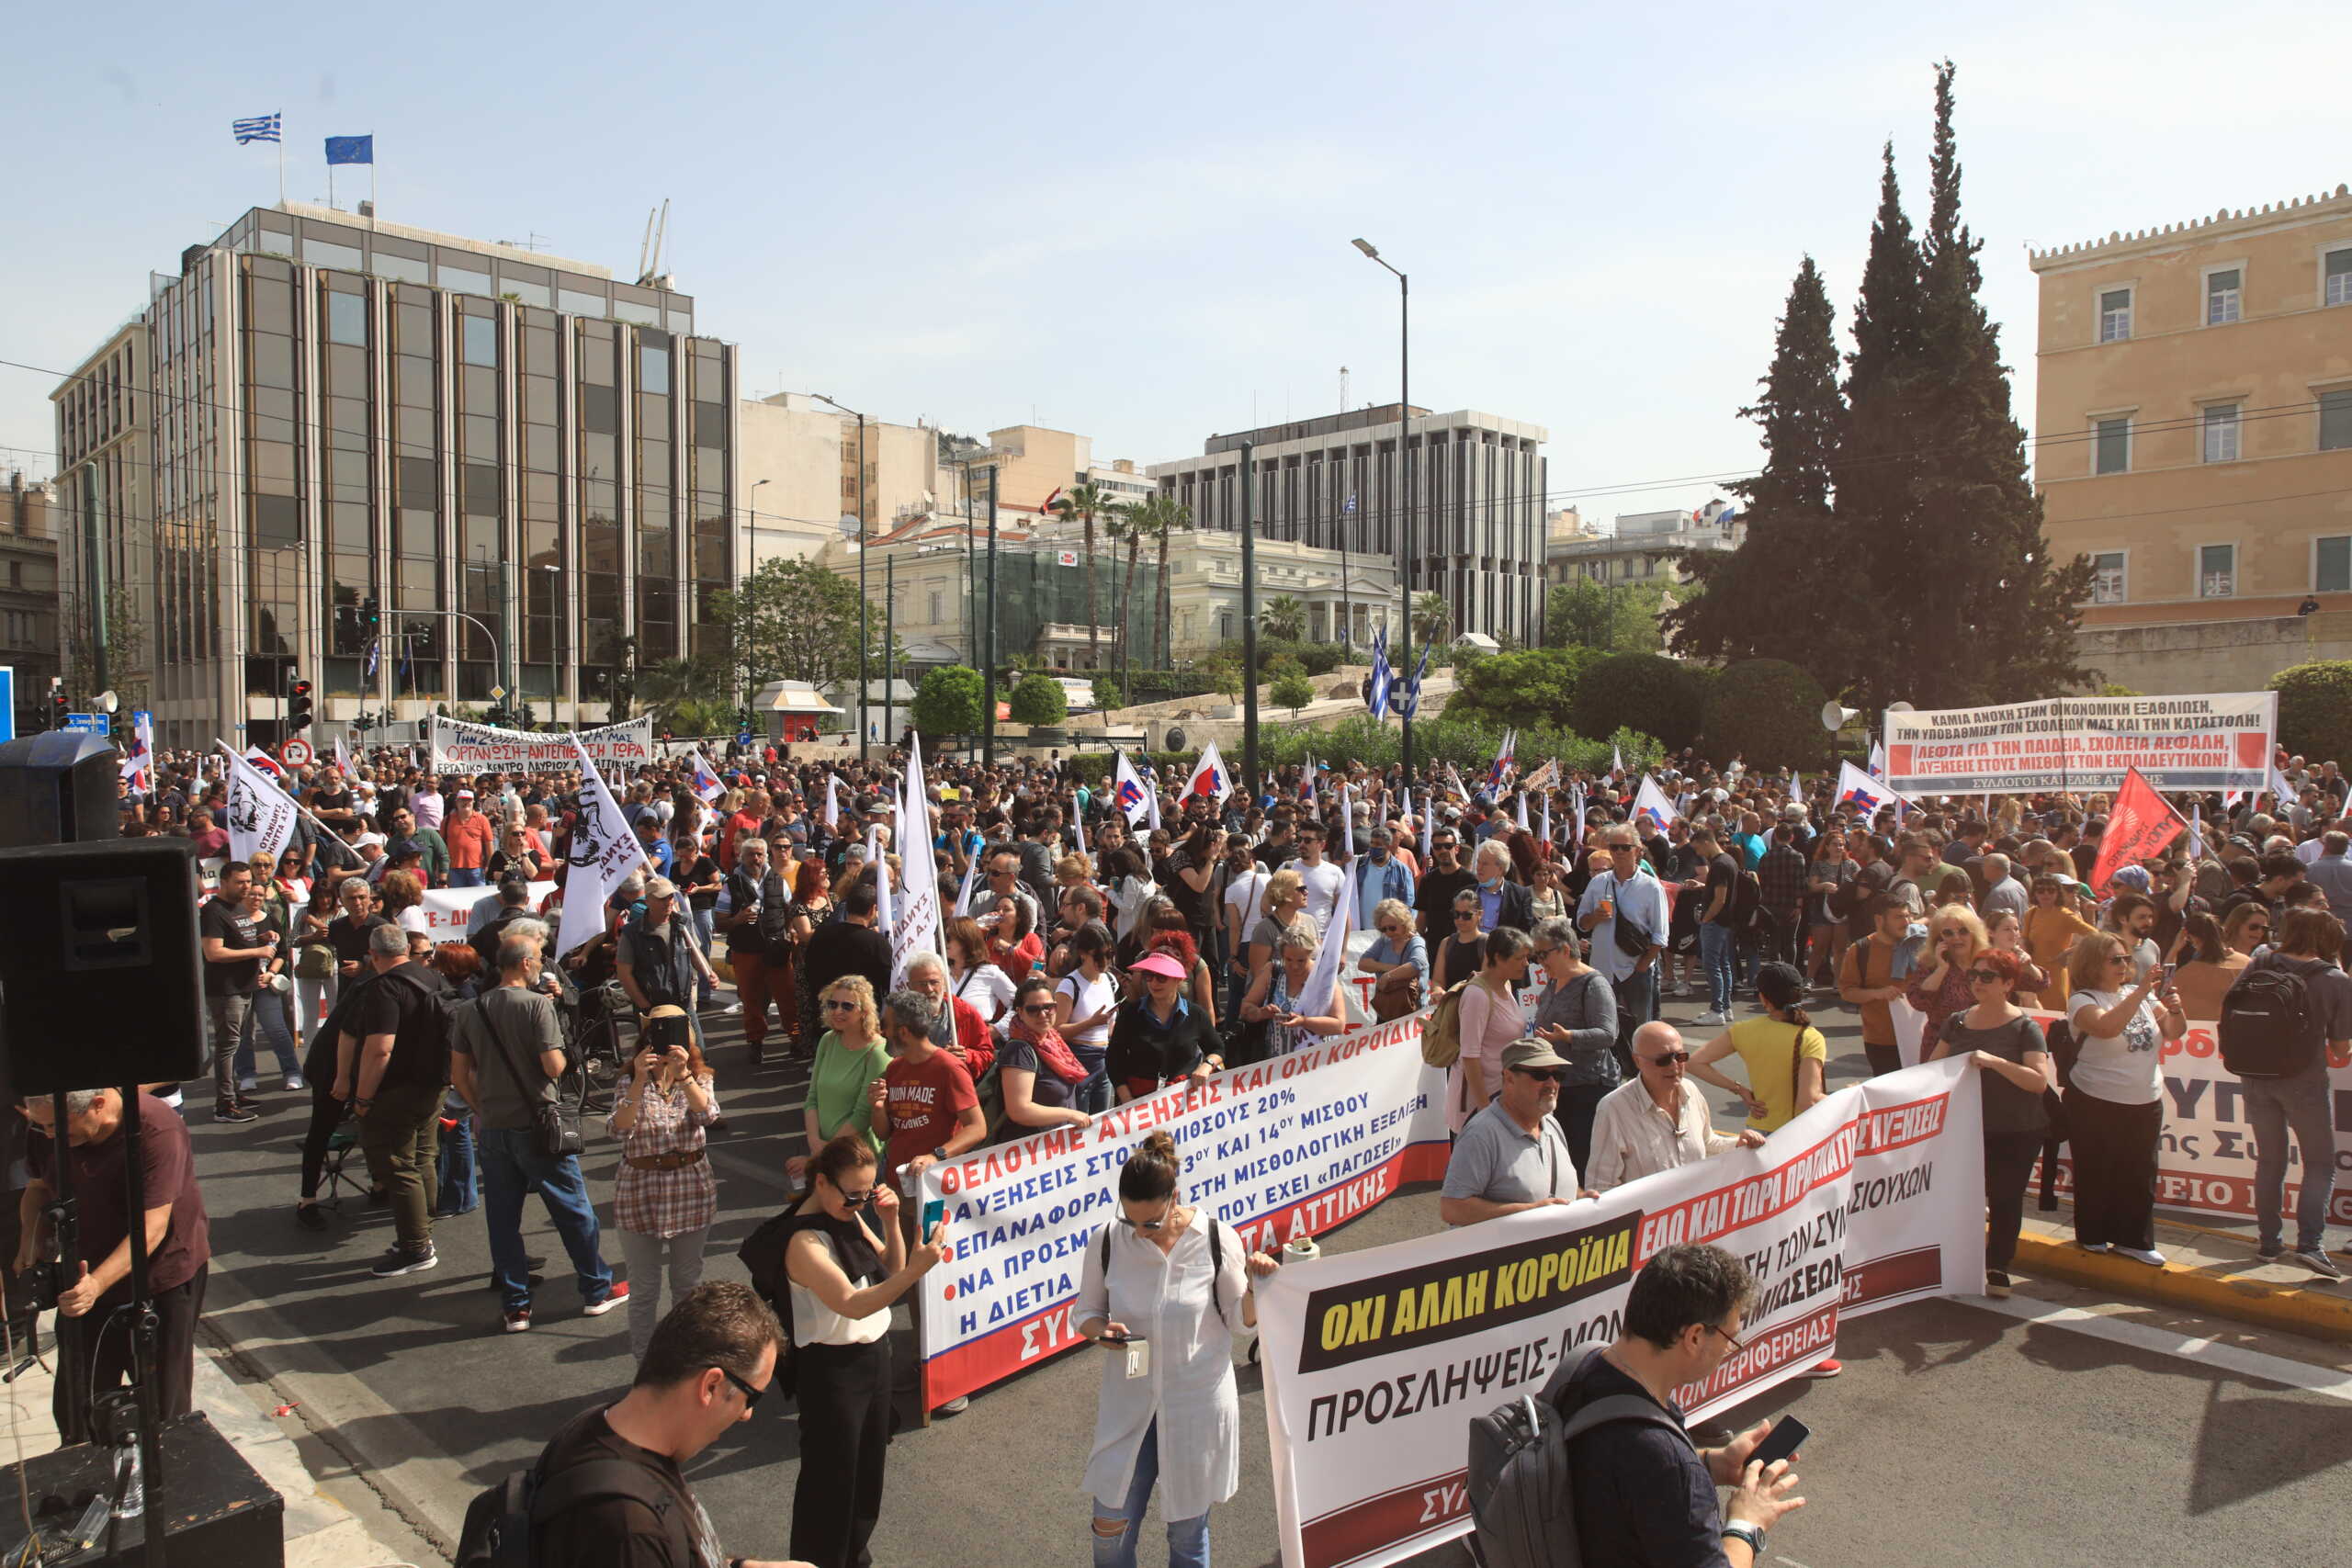 Απεργία ΓΣΕΕ: Σε εξέλιξη συγκεντρώσεις και πορείες, απροσπέλαστο το κέντρο της Αθήνας – Χωρίς μετρό, ηλεκτρικό και τραμ